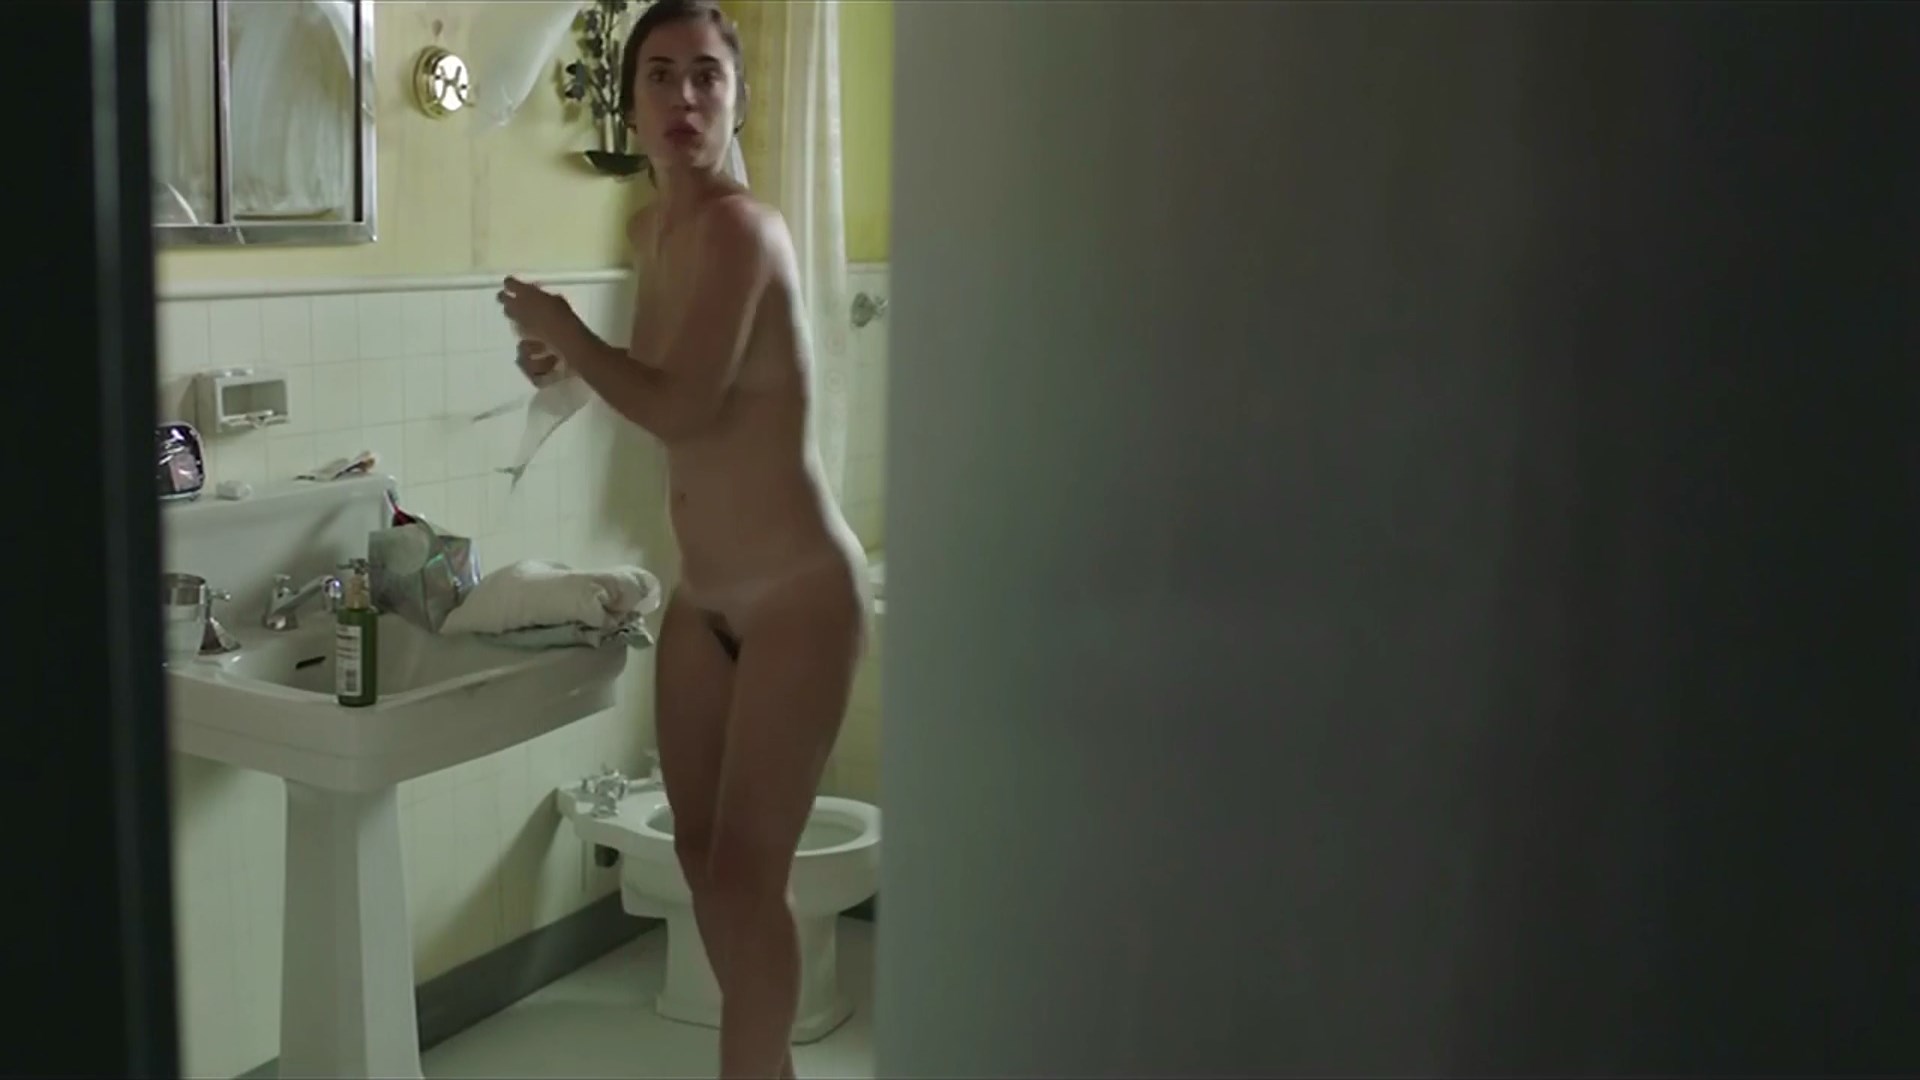 Nude Video Celebs Carolina Ramirez Nude Nina Errante 2018 5578